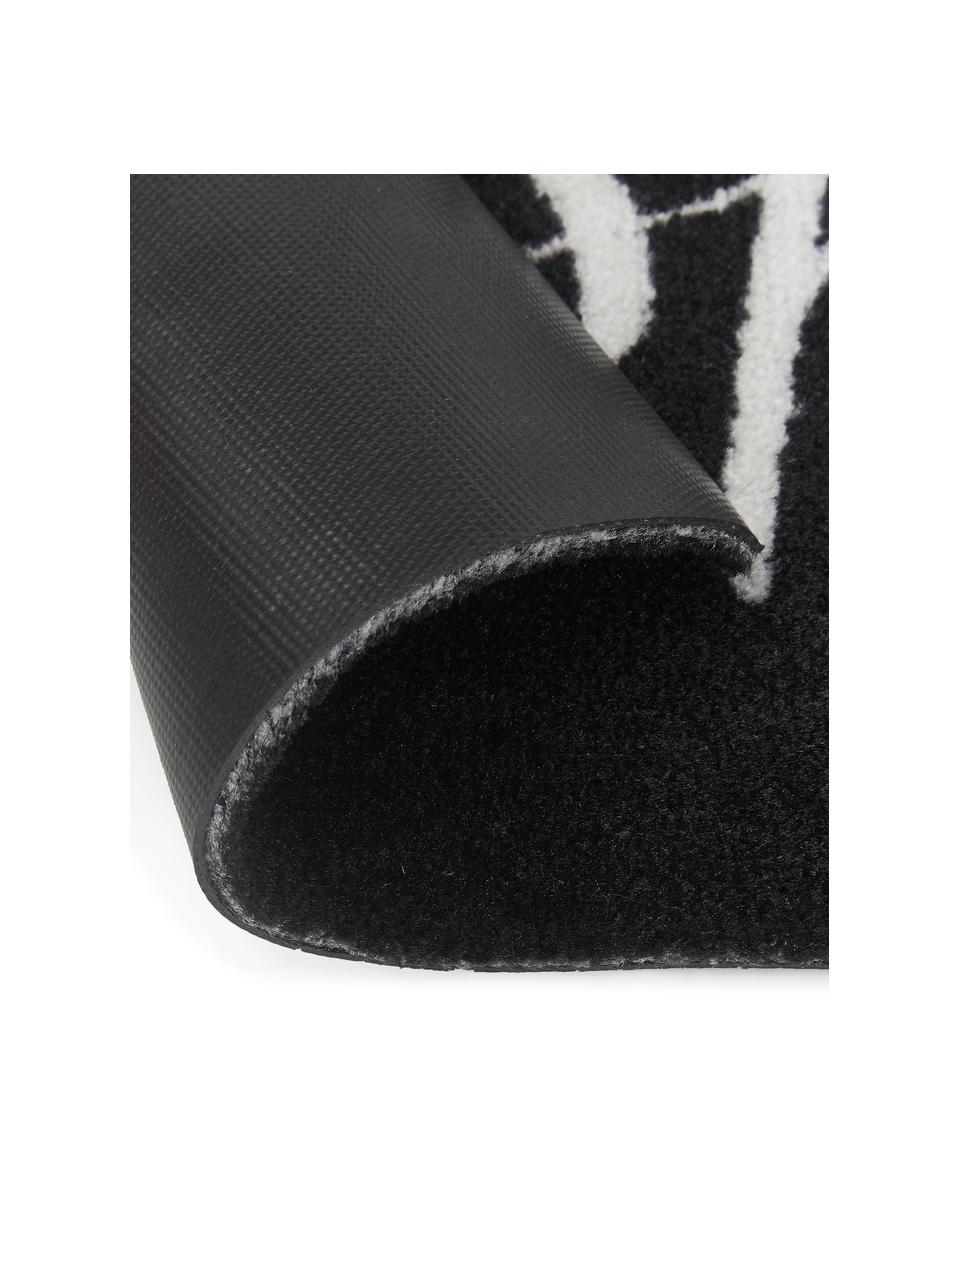 Waschbare Polyamid-Fußmatte Hereinspaziert, Unterseite: Gummi, Schwarz, Weiß, B 45 x L 75 cm